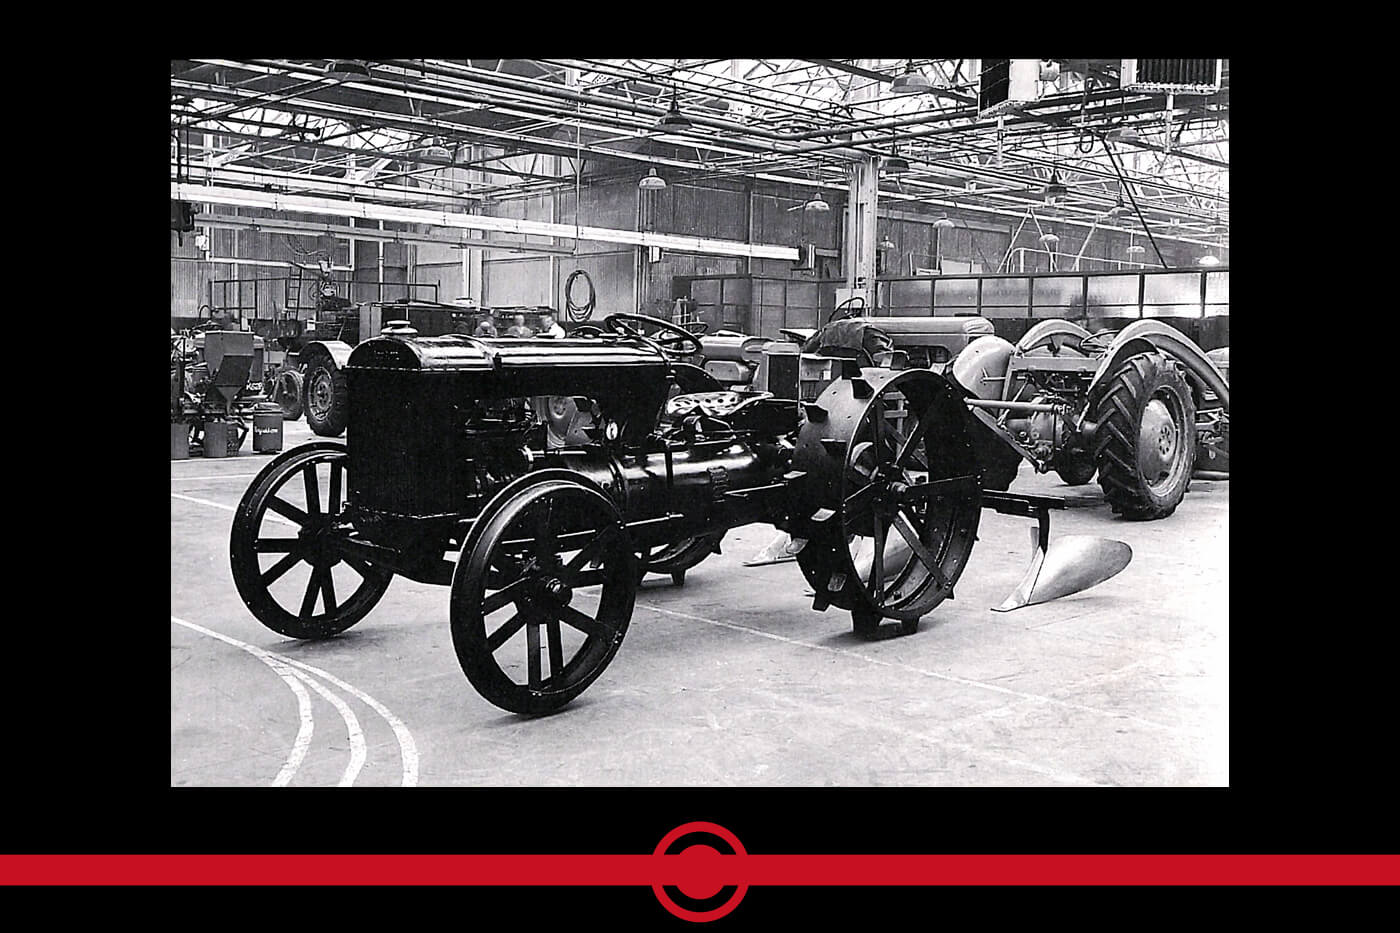 1933 - Creazione del sistema Ferguson ("trattore Ferguson Black")